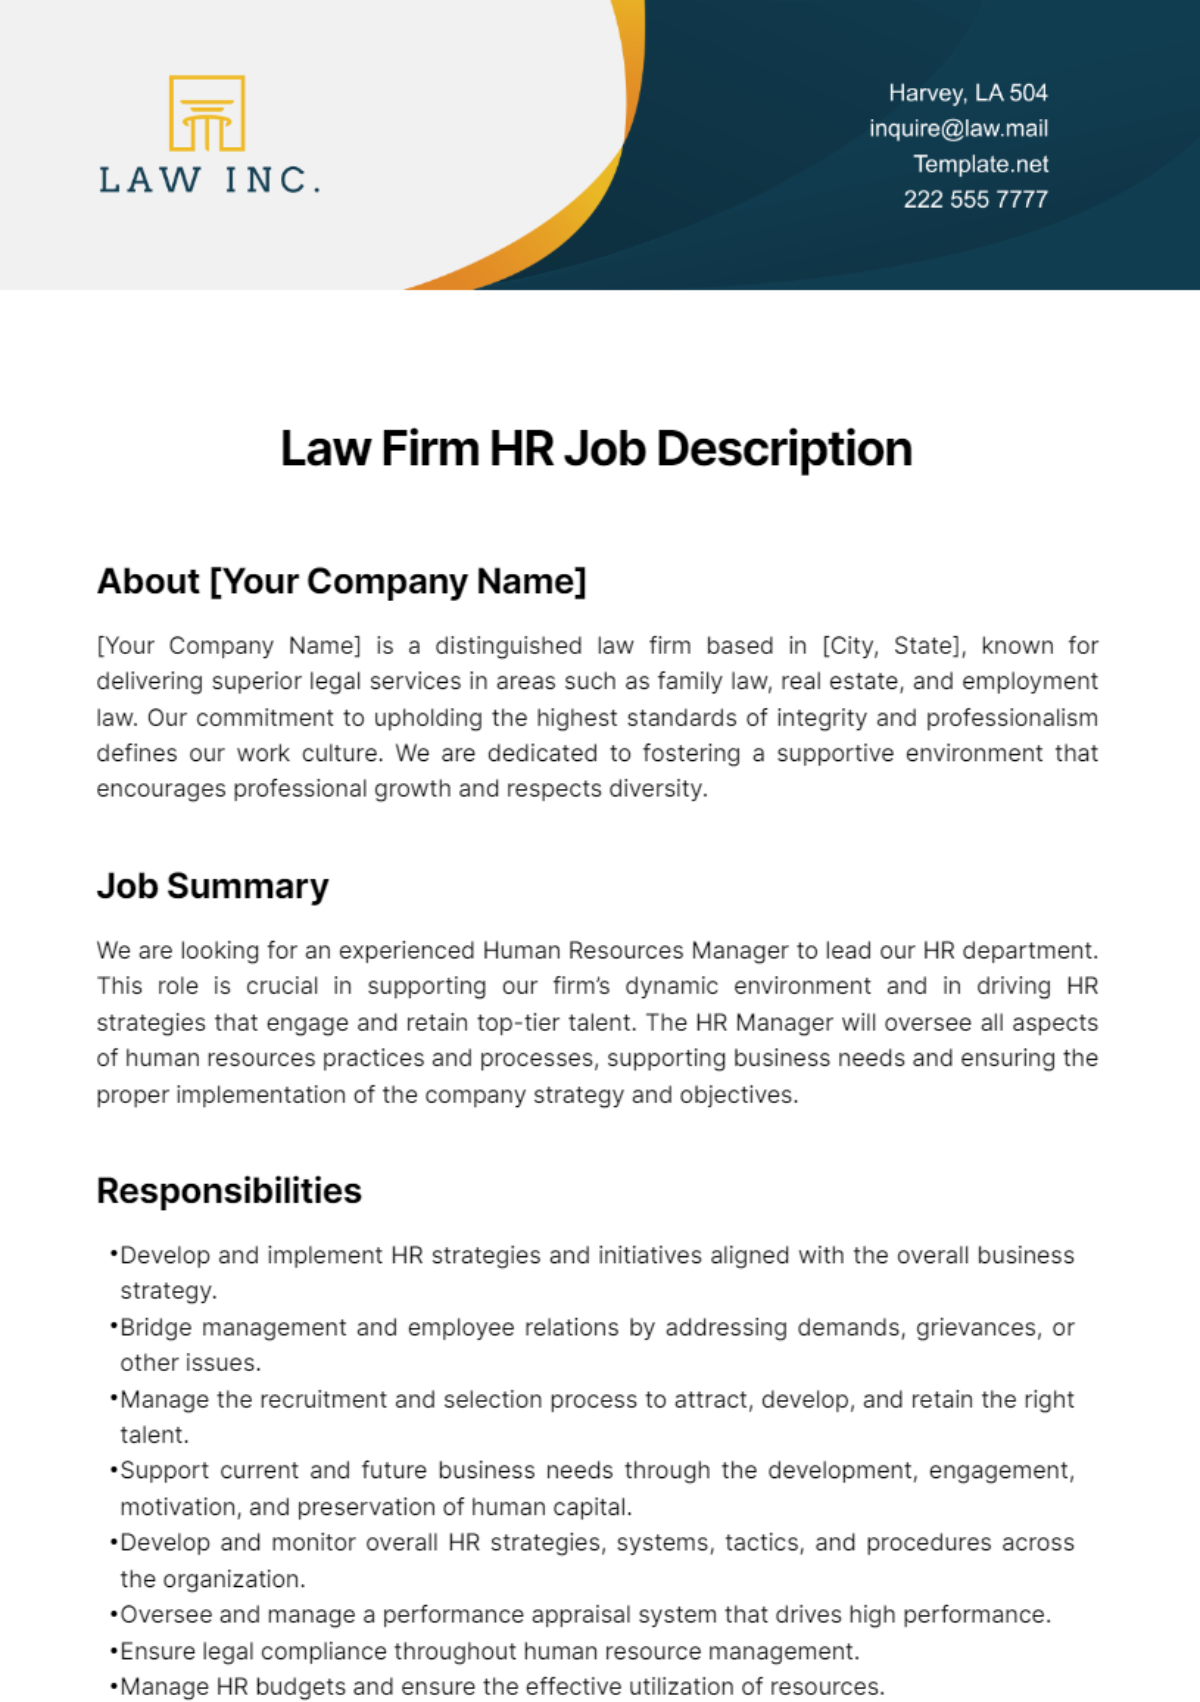 Law Firm HR Job Description Template